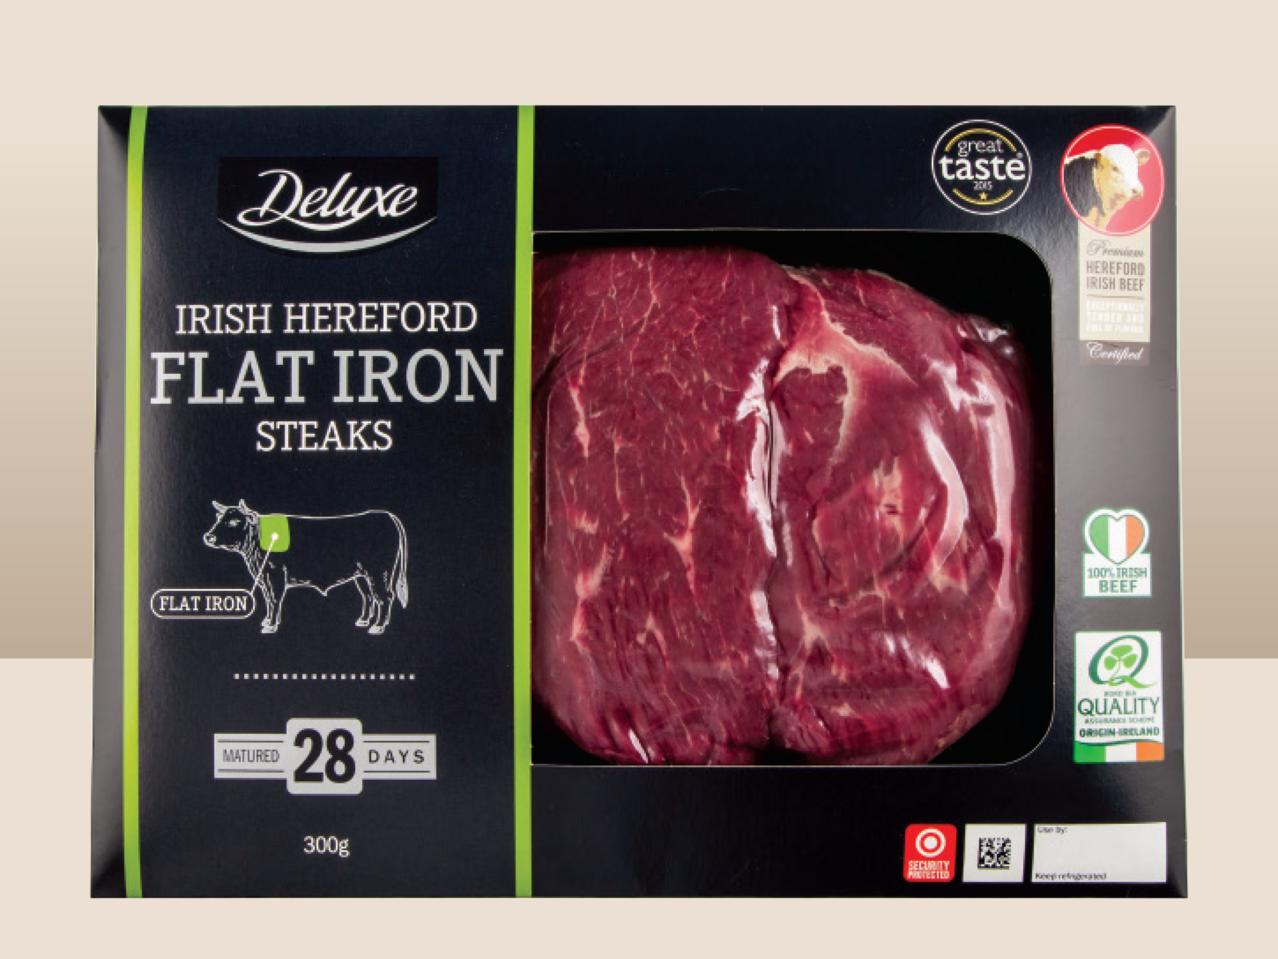 DELUXE Fresh Irish Hereford Flat Iron Steaks